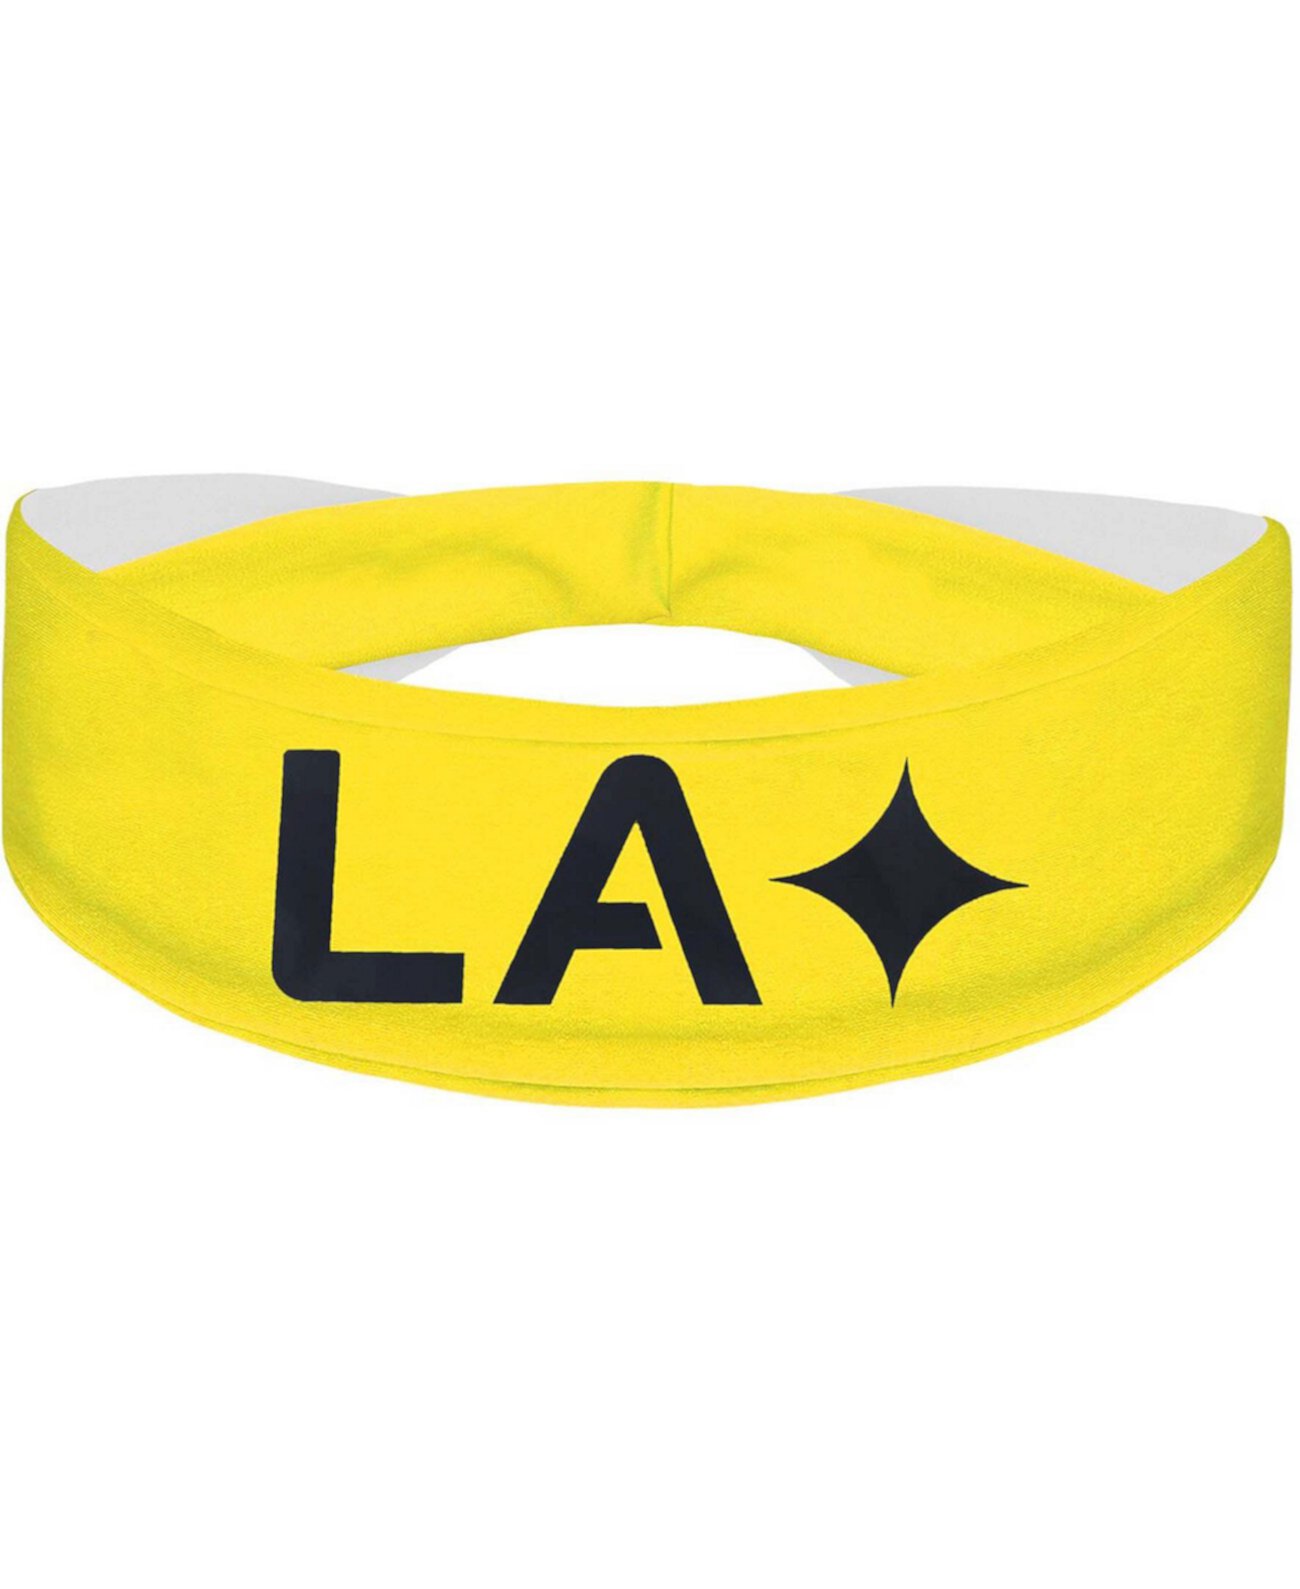 Золотистое охлаждающее оголовье LA Galaxy с альтернативным логотипом Vertical Athletics